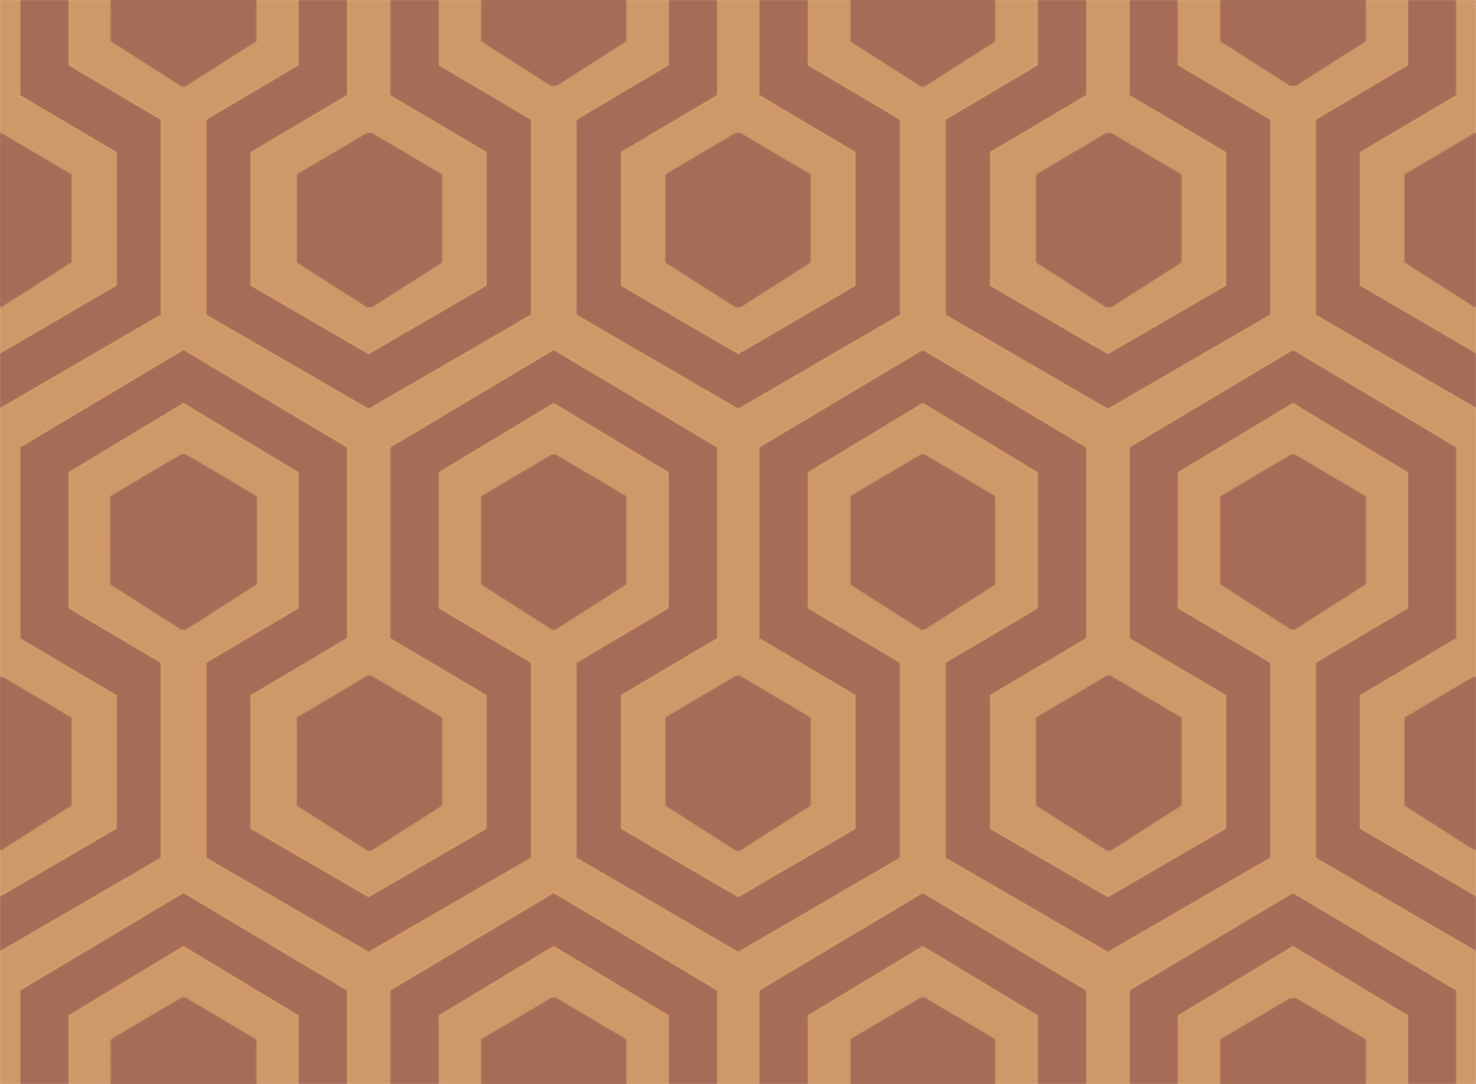 Hexagons_02